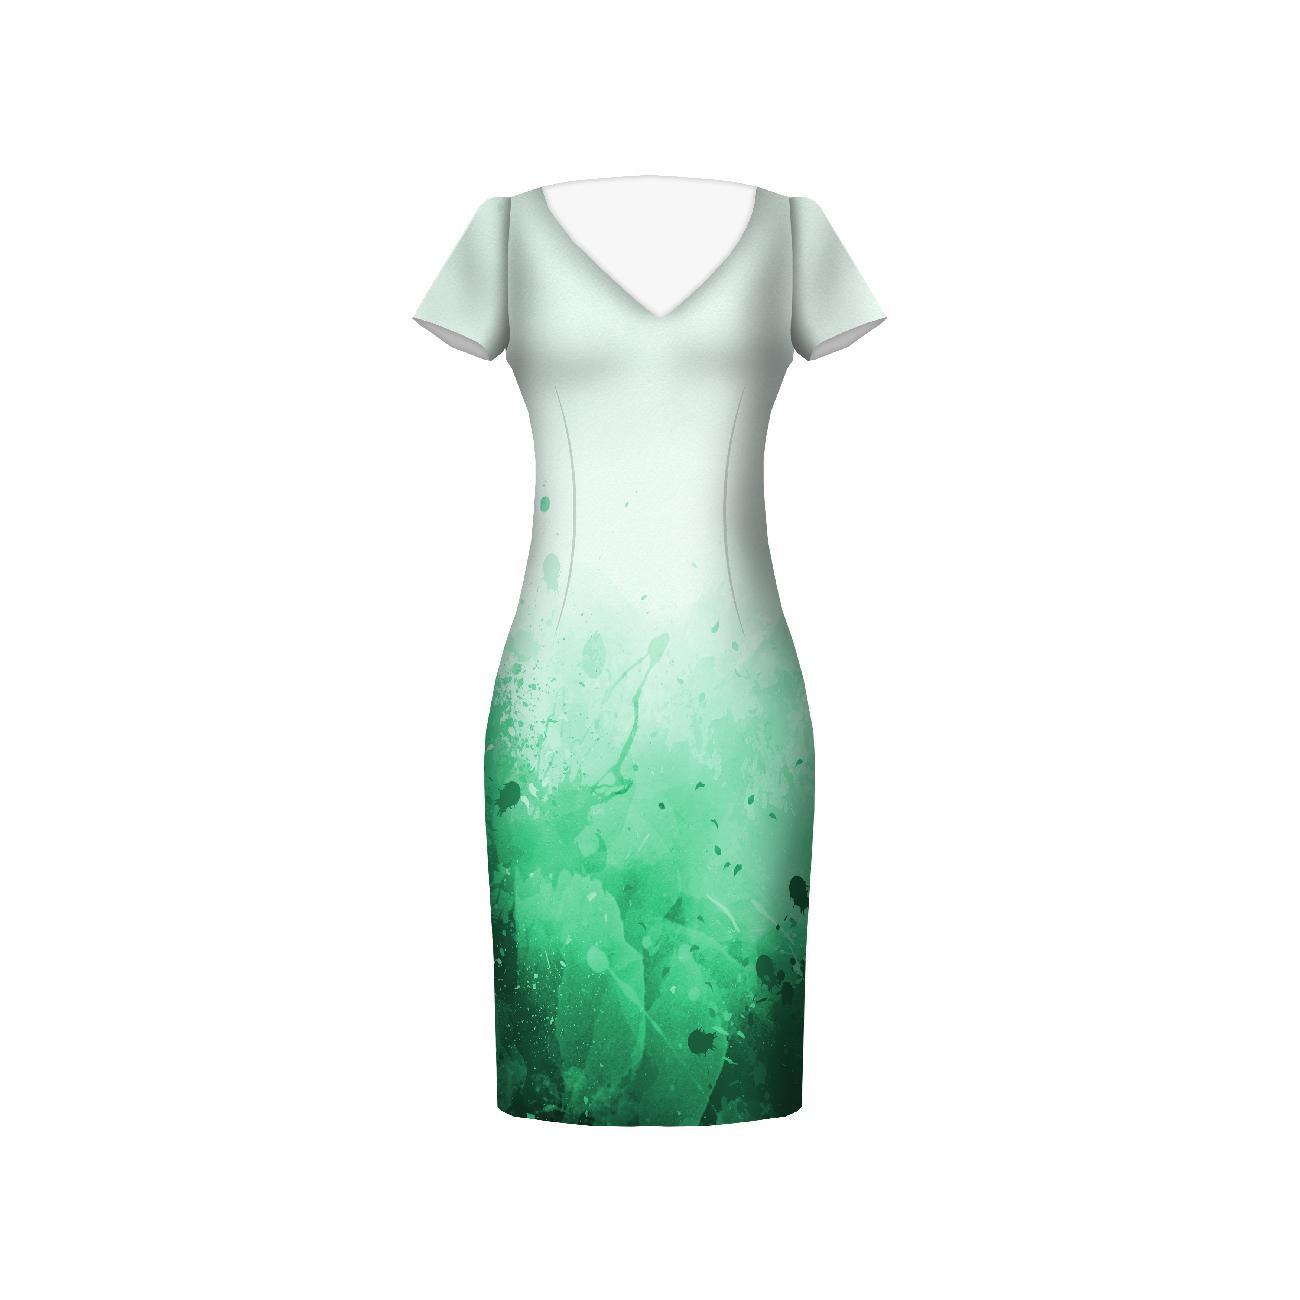 SPECKS (green) - dress panel Linen 100%